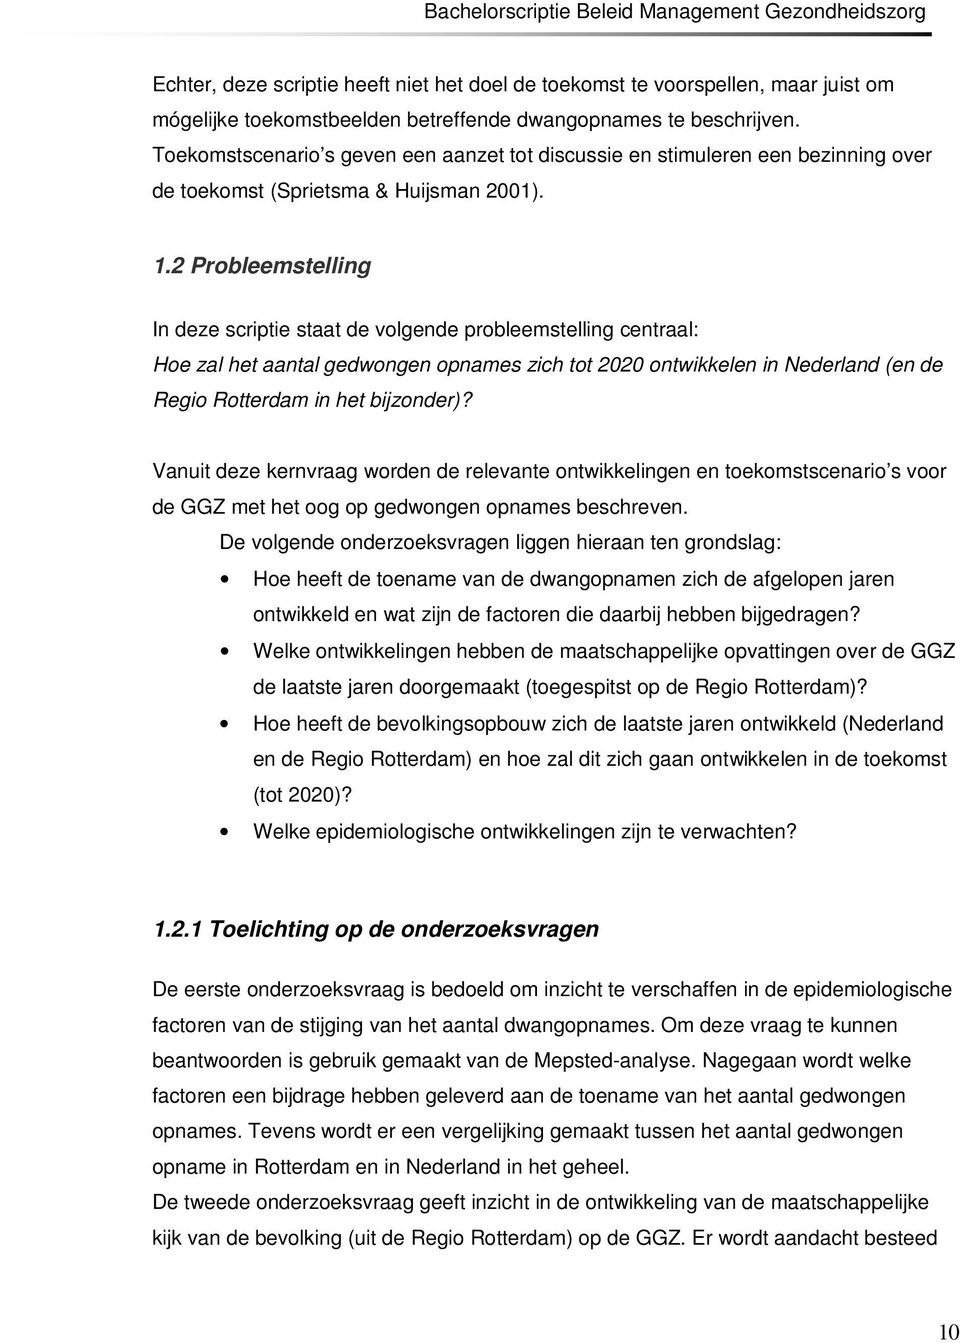 2 Probleemstelling In deze scriptie staat de volgende probleemstelling centraal: Hoe zal het aantal gedwongen opnames zich tot 2020 ontwikkelen in Nederland (en de Regio Rotterdam in het bijzonder)?